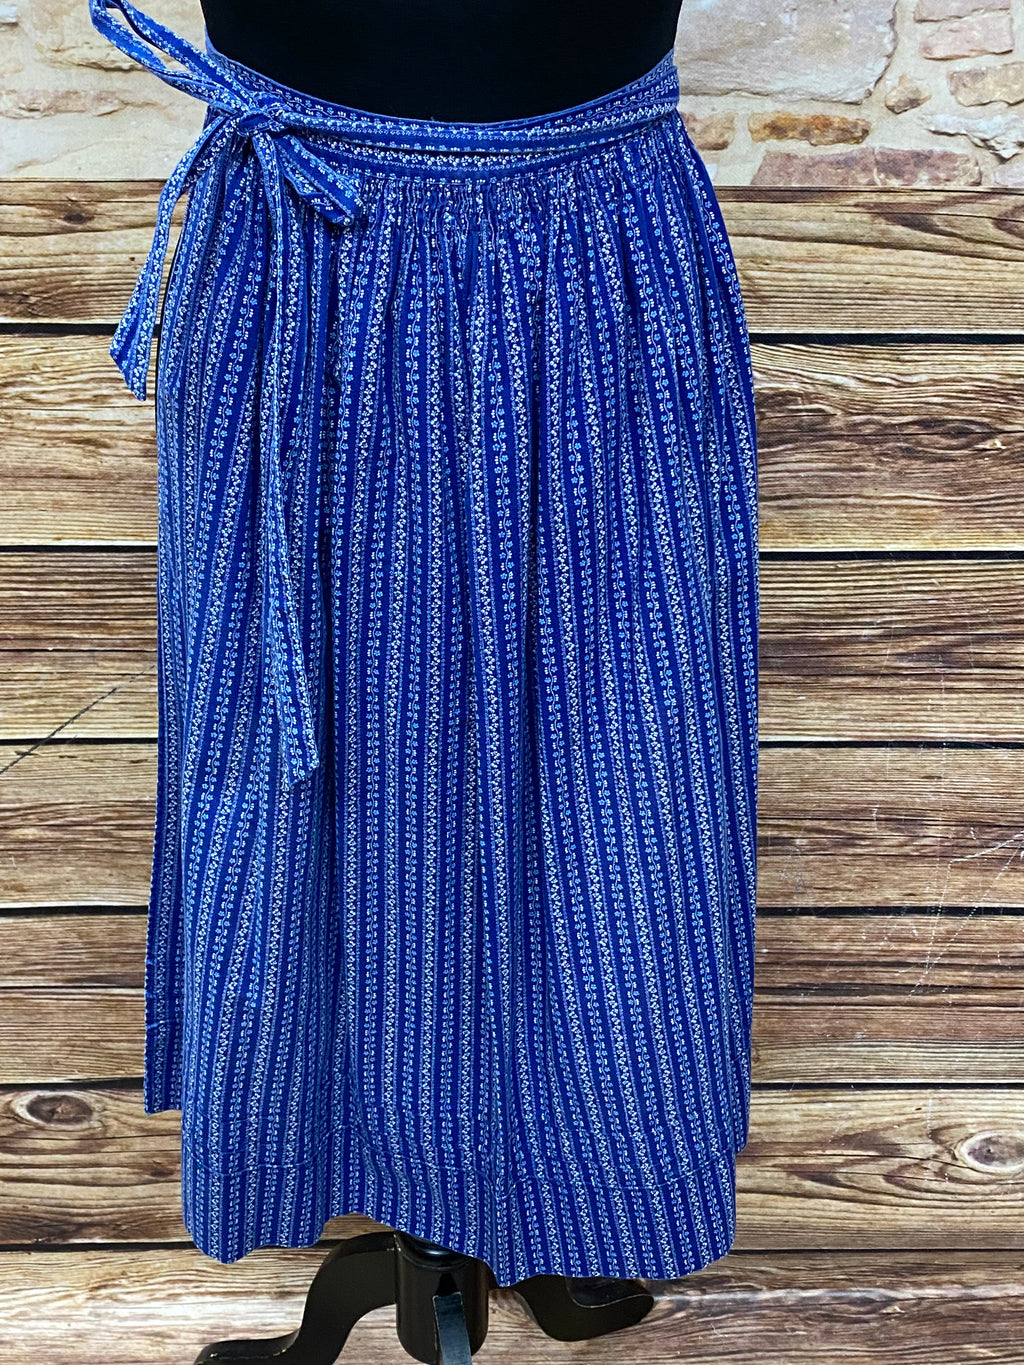 Dirndlschürze Vintage für Trachtenkleid Länge 71 cm, Farbe blau, Hellblau und weiß